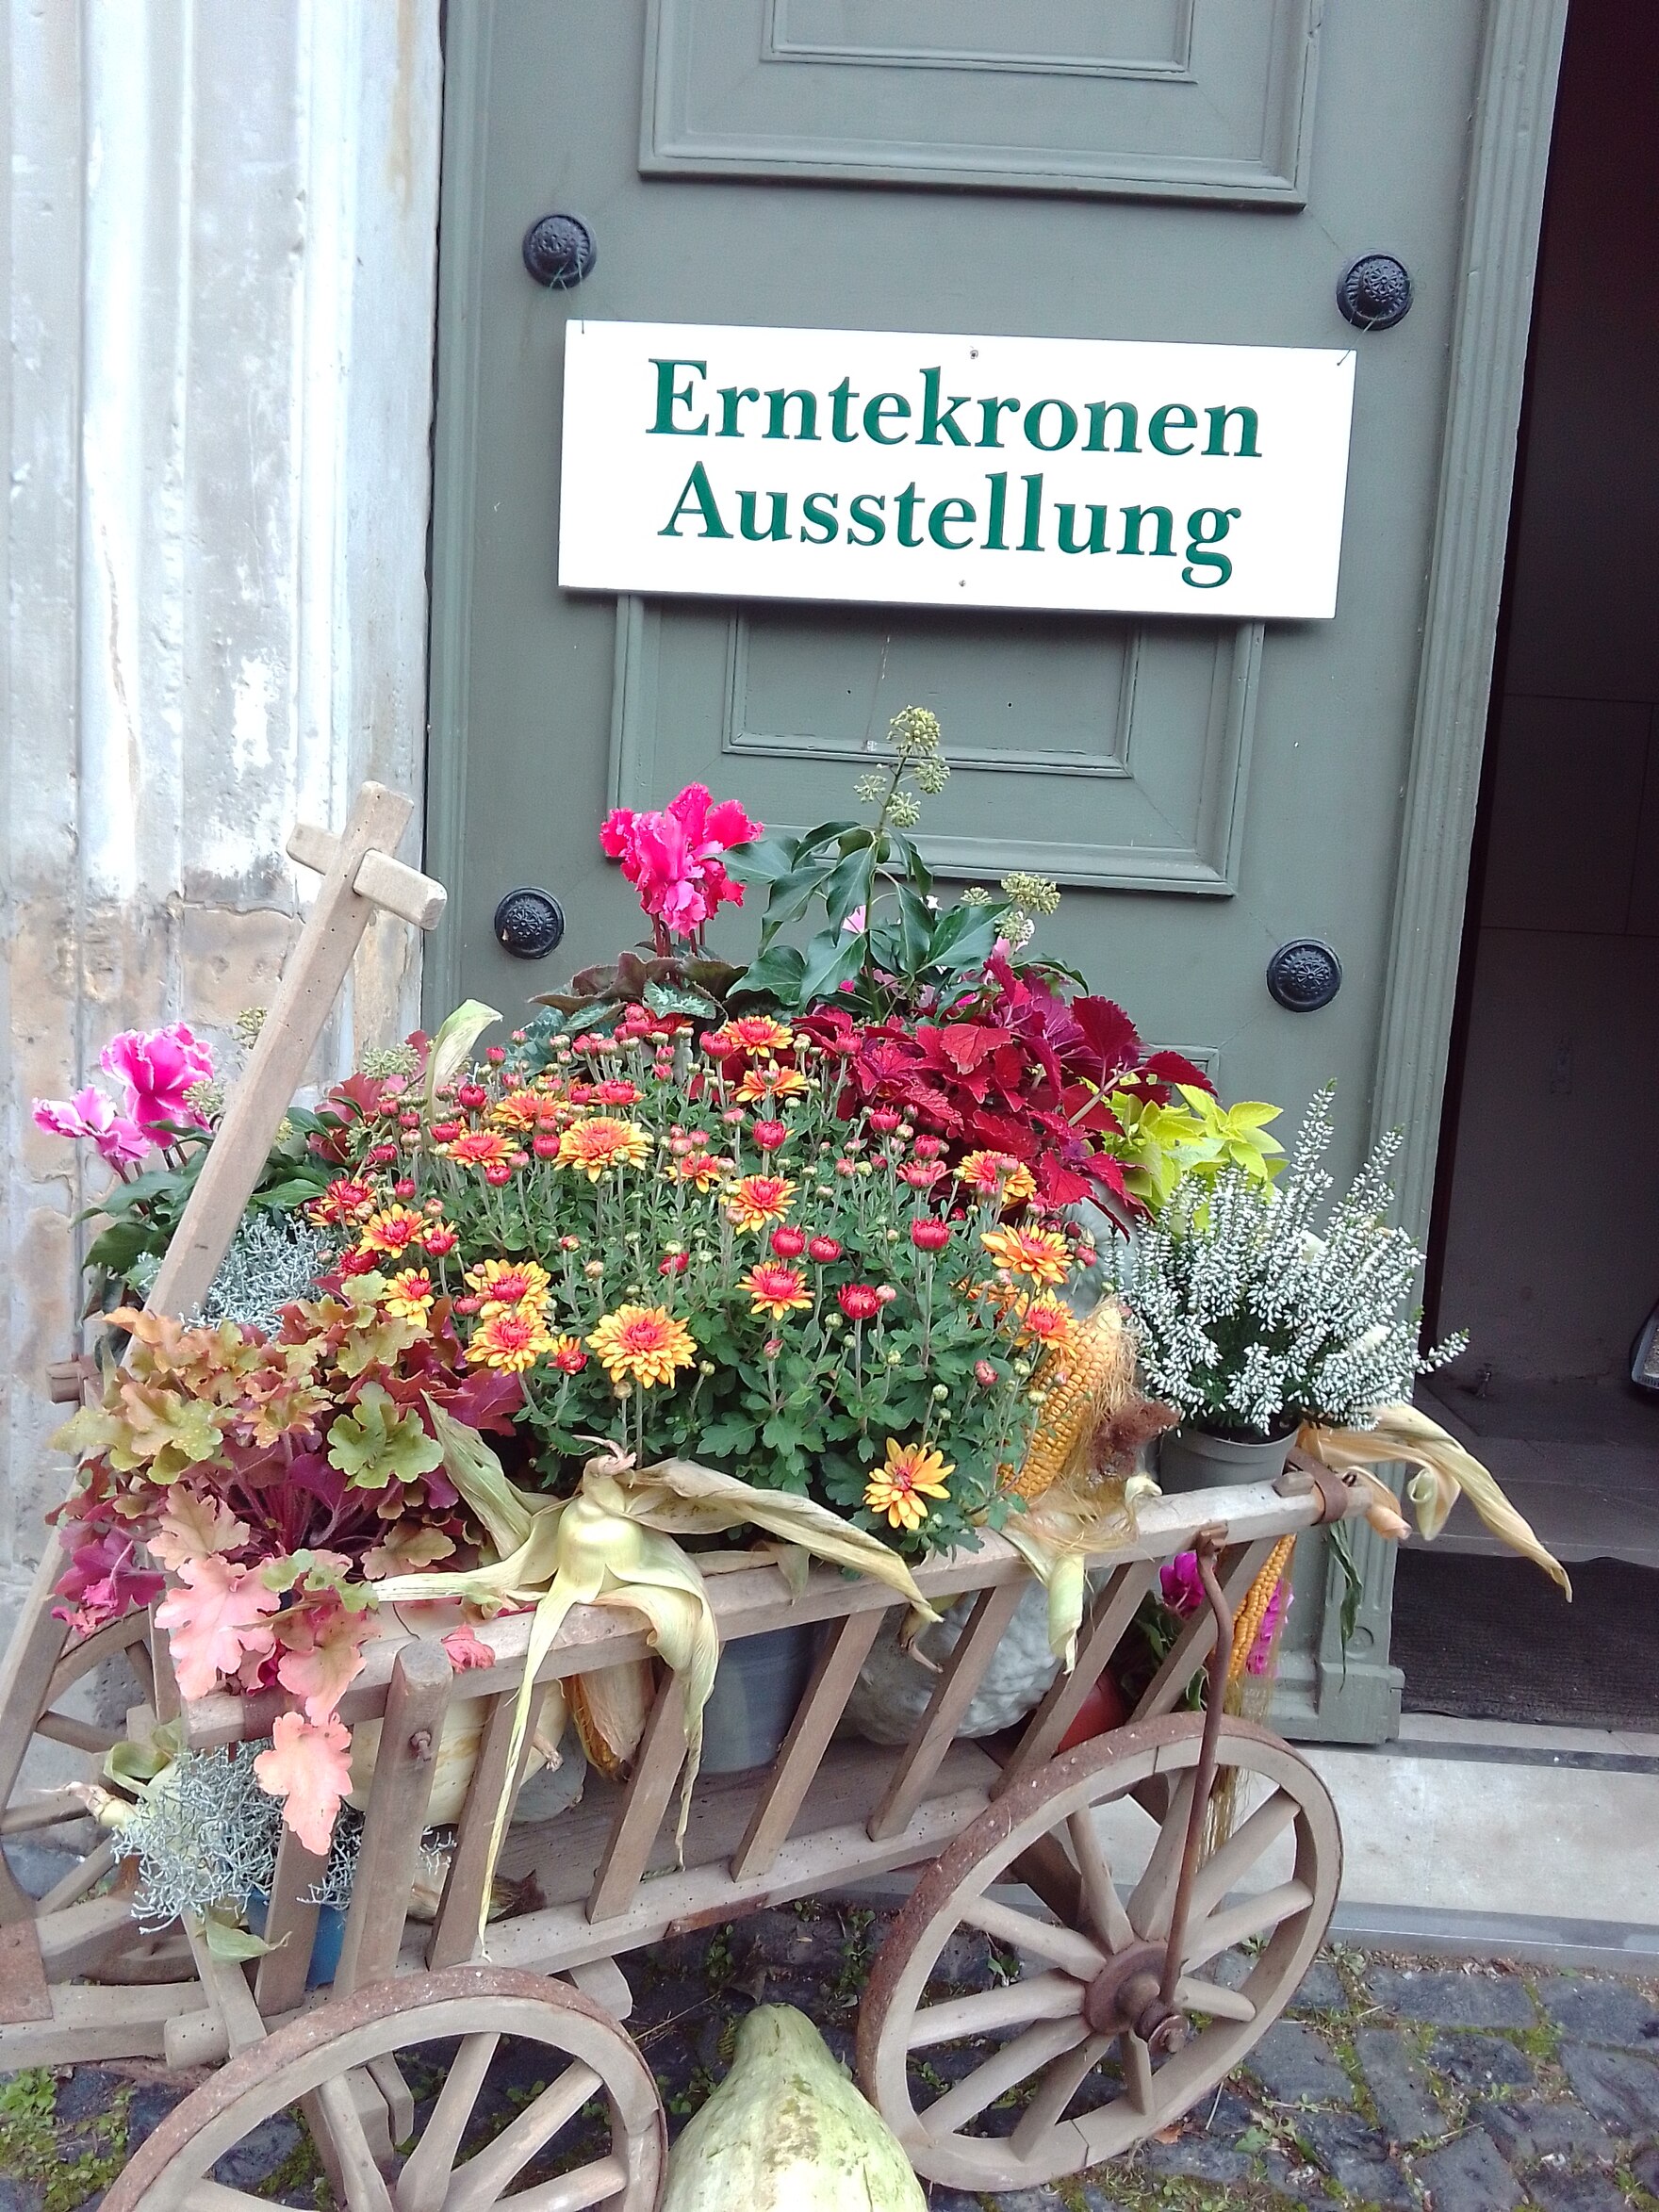 mit Blumen dekorierter Handwagen vor der Eingangstür der St. Johanniskirche Zittau mit dem Schild "Erntekronen Ausstellung"